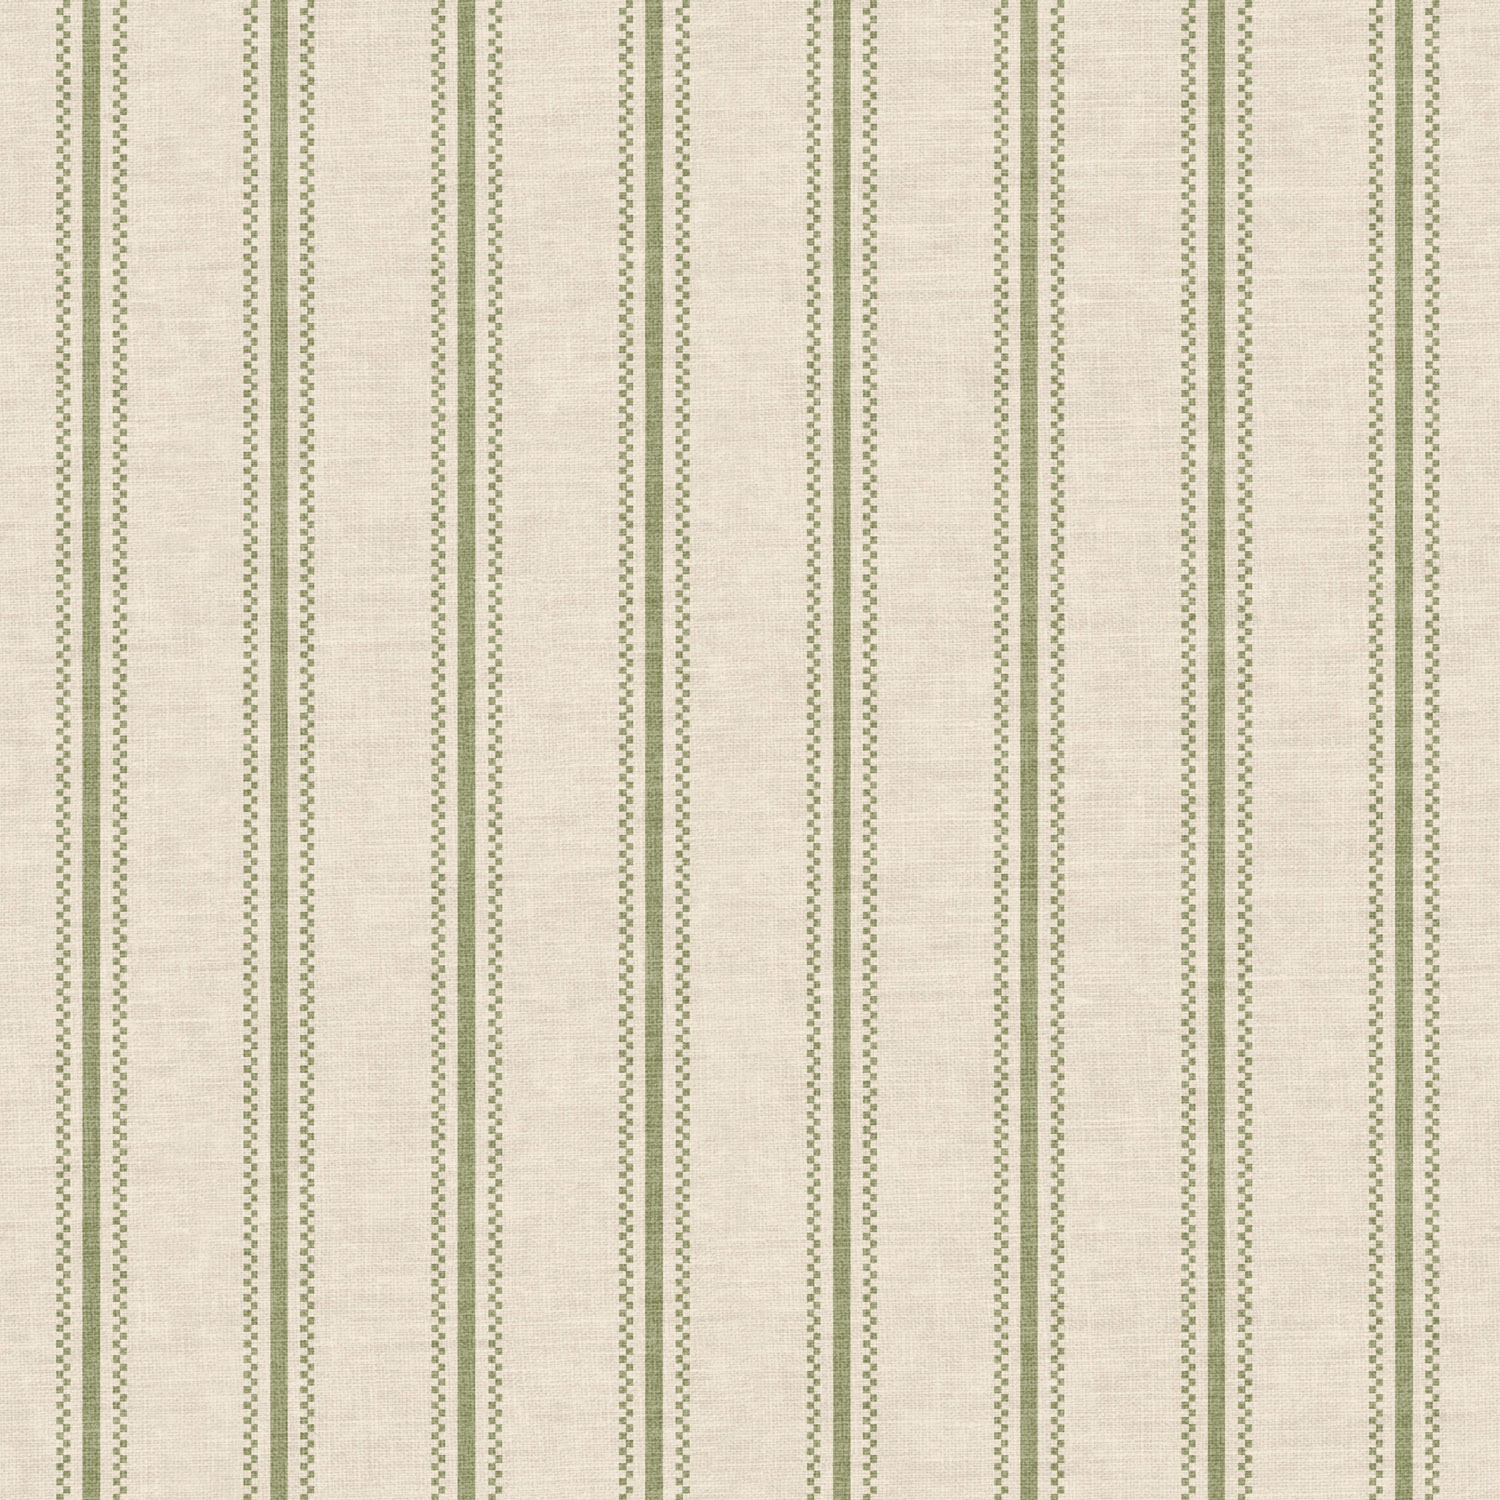 Stripe / Check Wallpaper